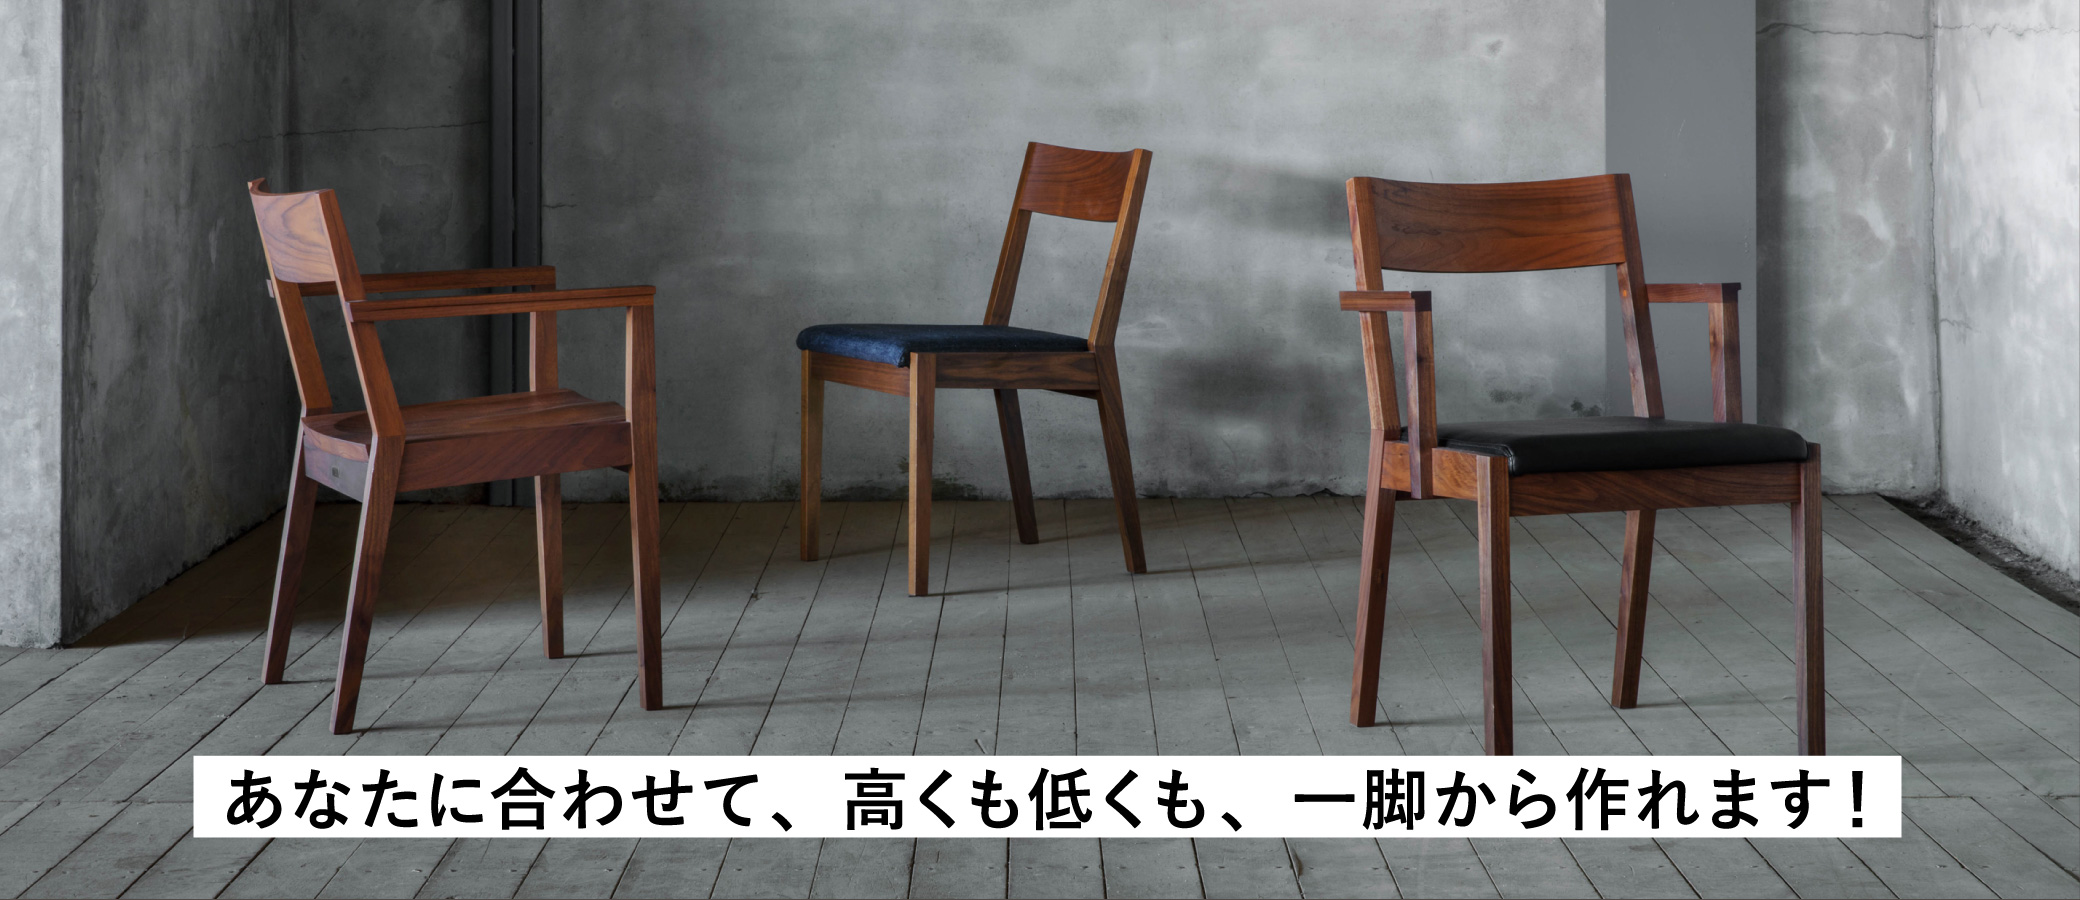 名古屋栄にある家具屋さんSOLIDで、あなたの暮らしに寄り添うチェアを高さオーダーしてみませんか？高くも低くも、一脚から作れます。